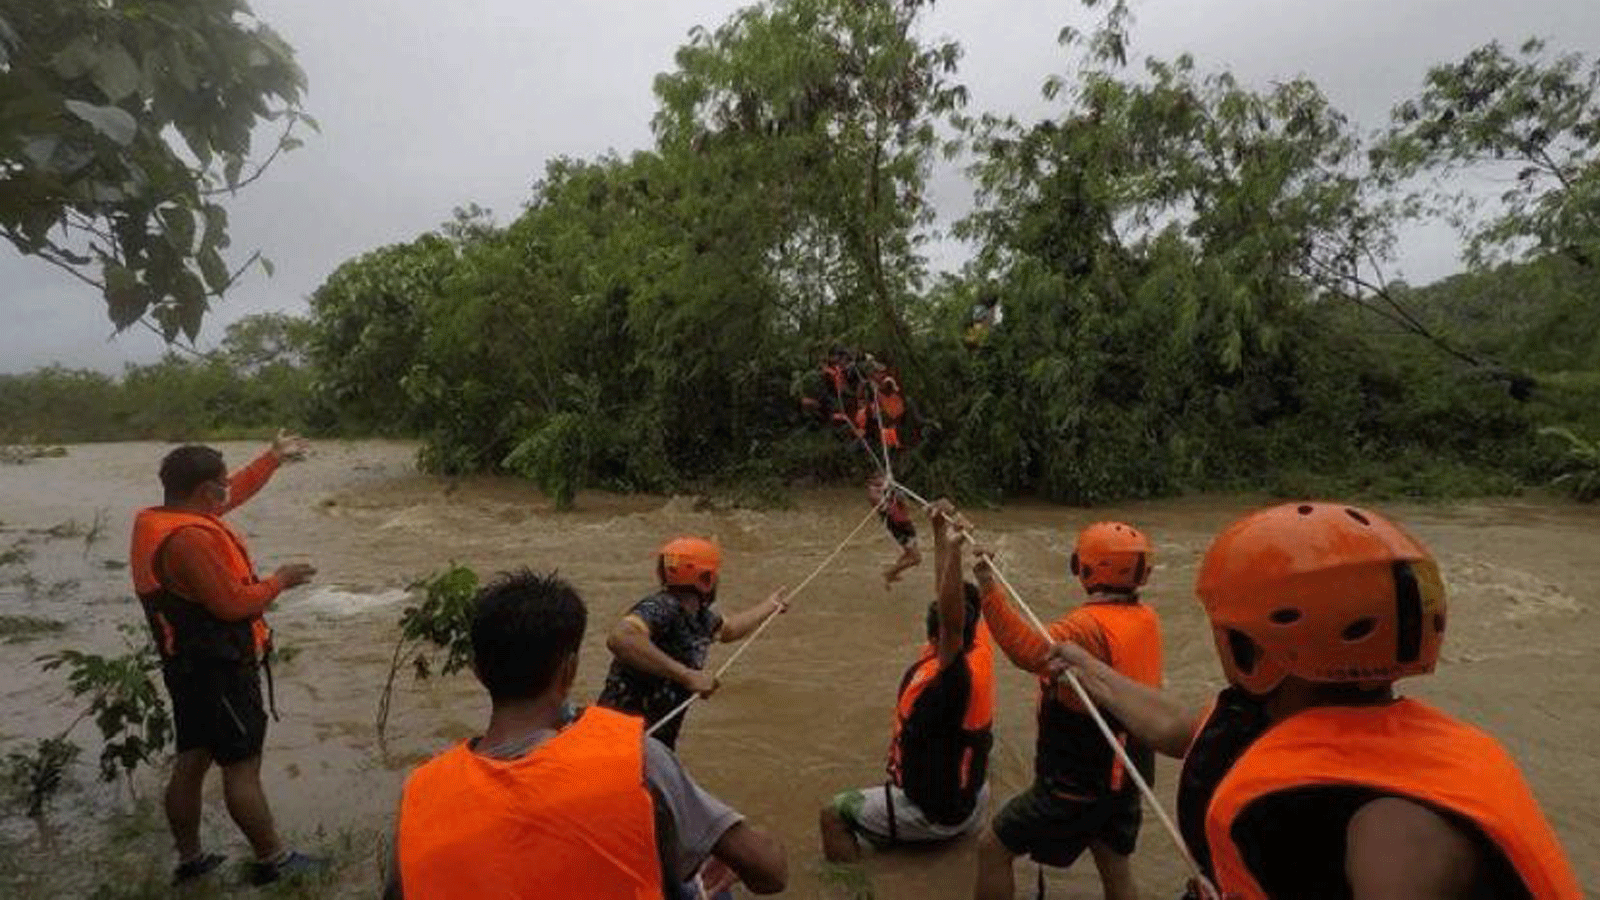 عمال الإنقاذ يقومون بإجلاء السكان من منازلهم بالقرب من نهر متضخم بسبب الأمطار الغزيرة التي سببتها العاصفة الاستوائية كومباسو في مقاطعة كاجايان شمال مانيلا.